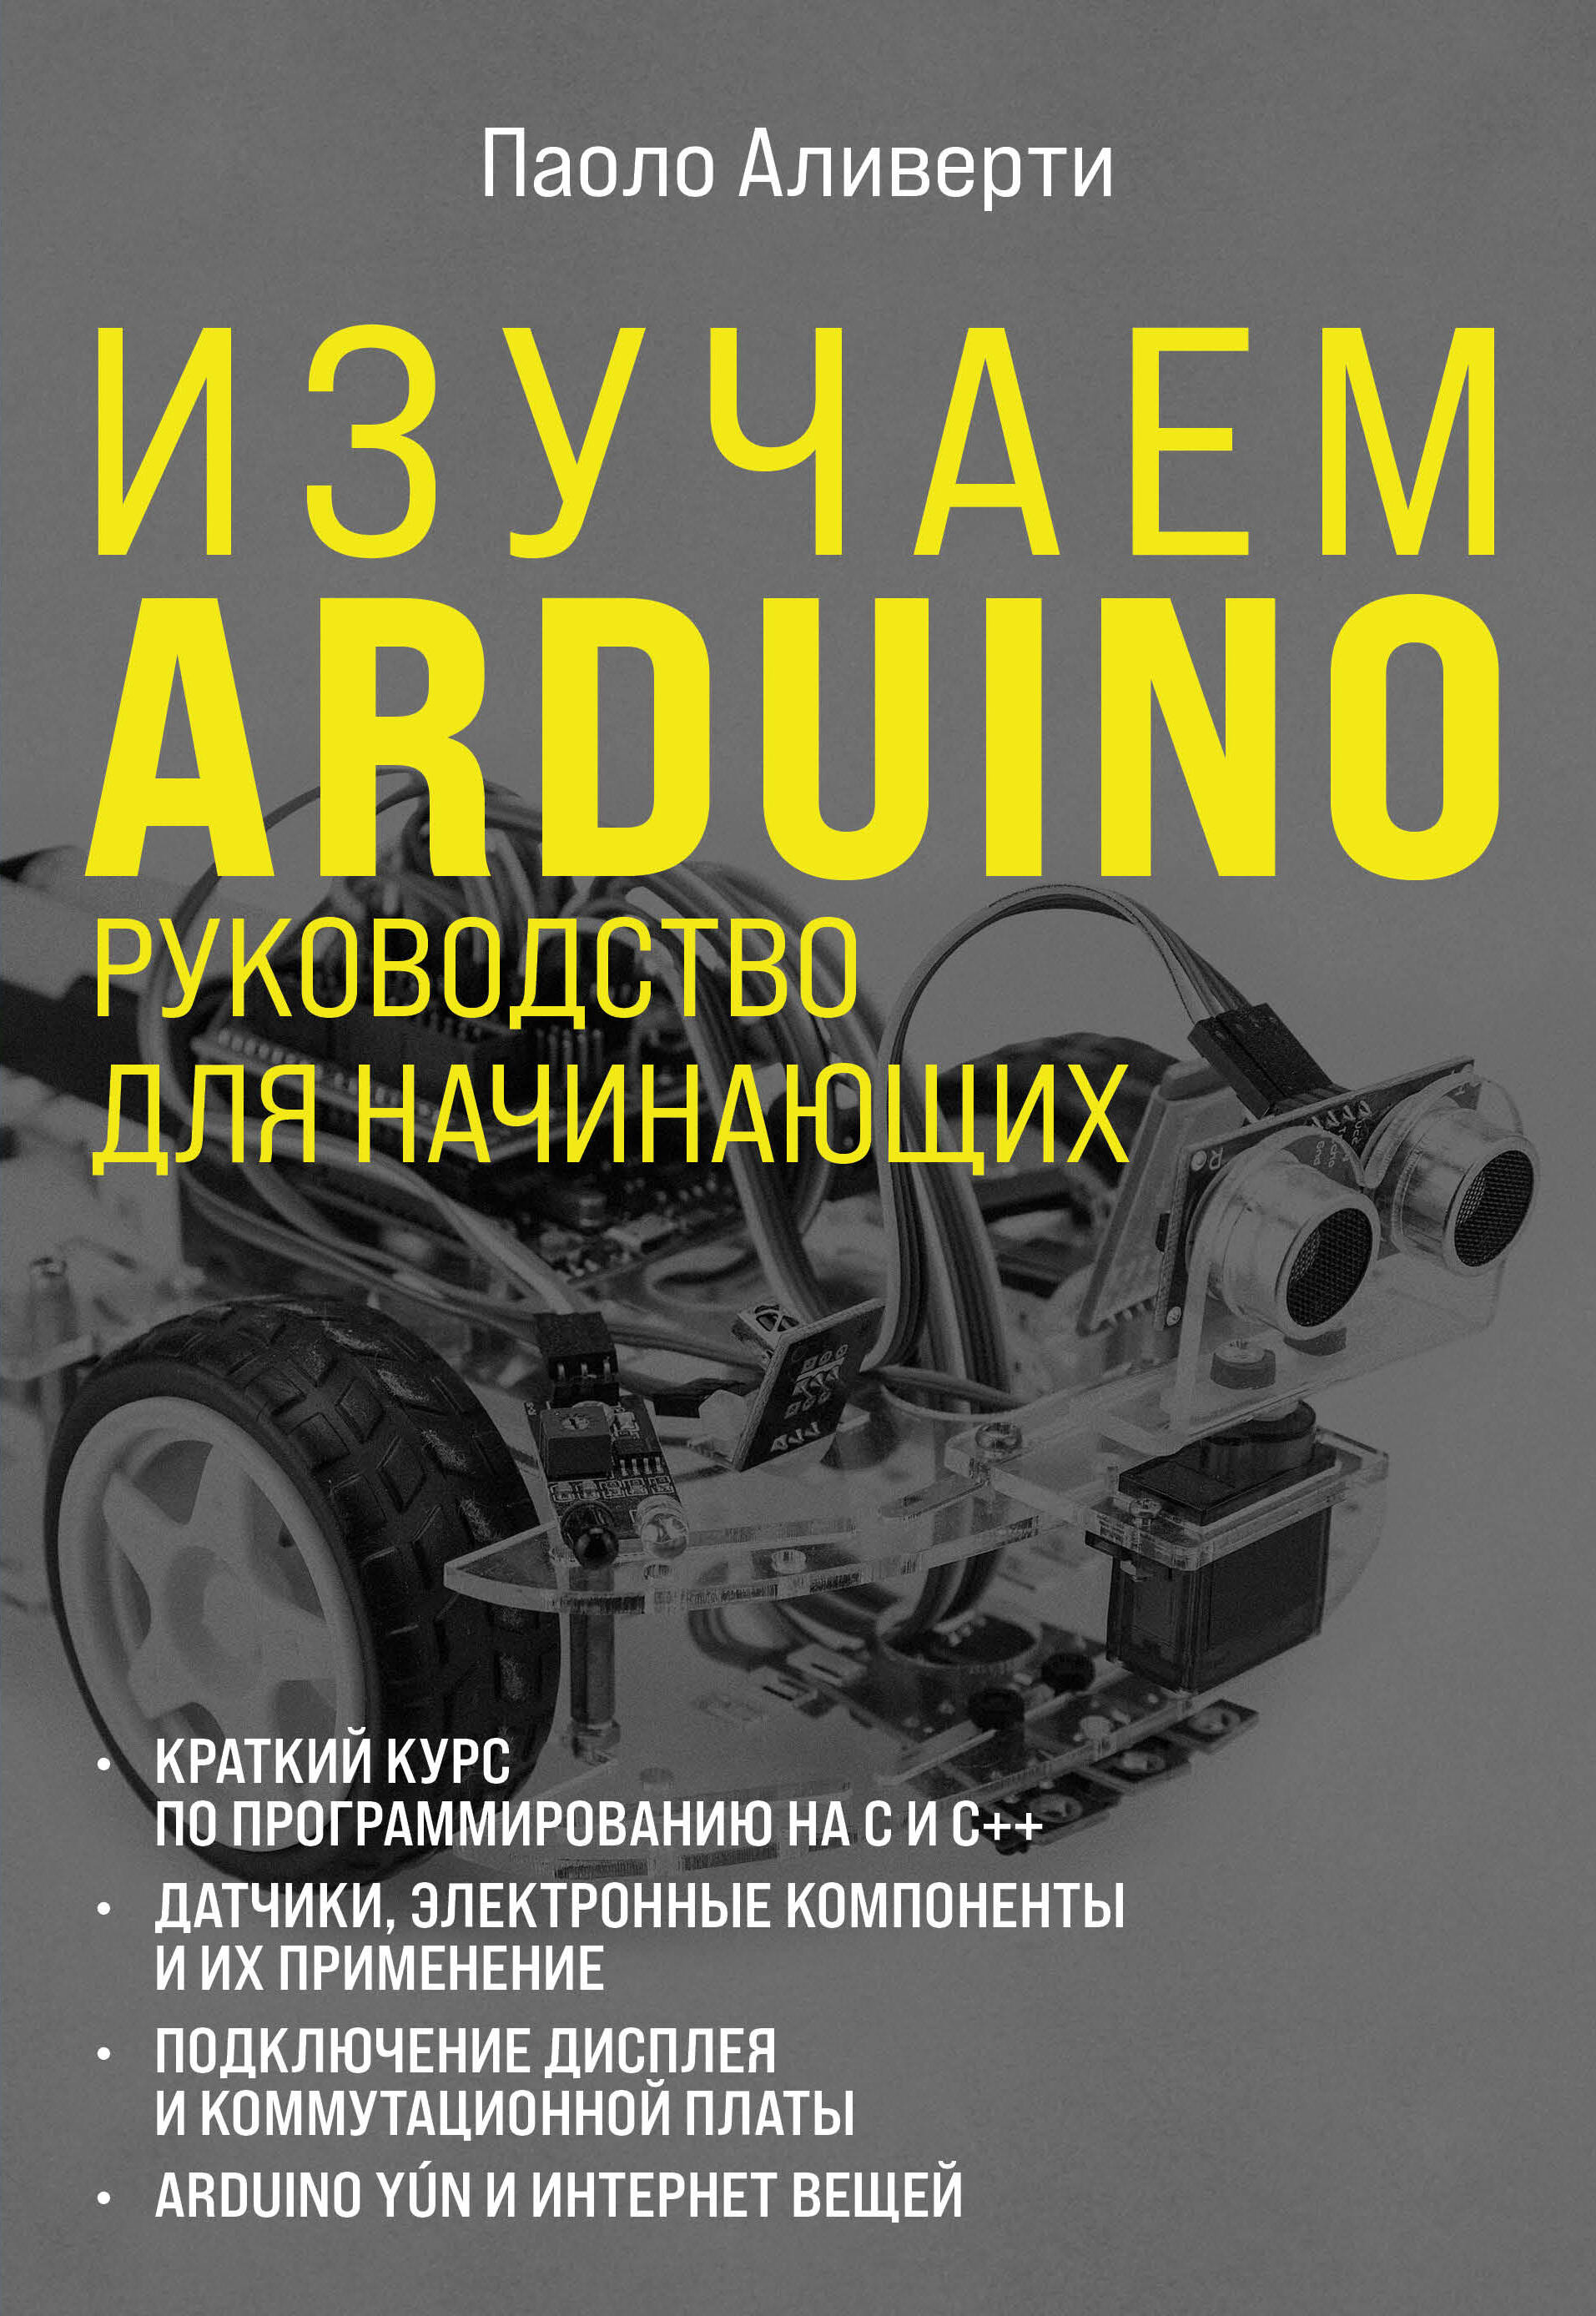 Изучаем Arduino. Руководство для начинающих сыроедение руководство для начинающих